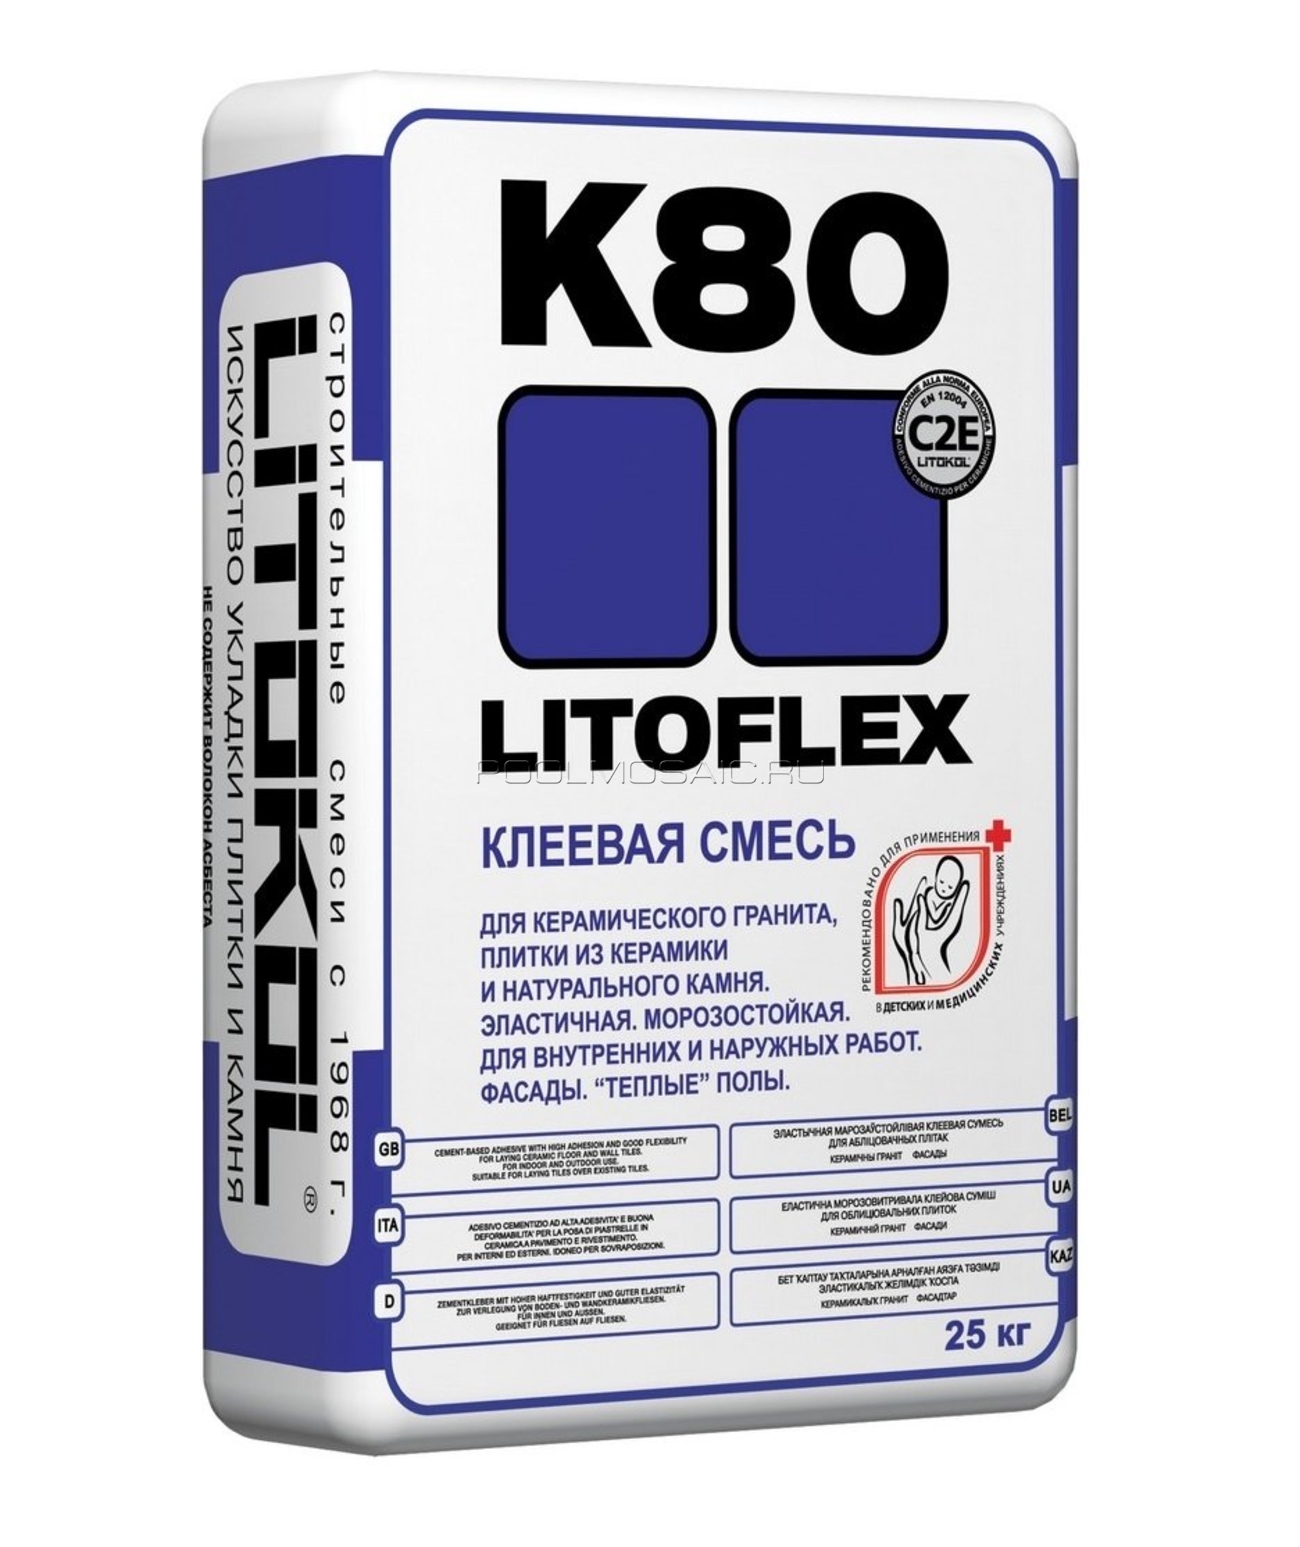 Купить клей литокол. Litokol LITOFLEX k80. Litokol LITOFLEX k80, 25кг. Плиточный клей к80 литофлекс. Клей для плитки Литокол к80.